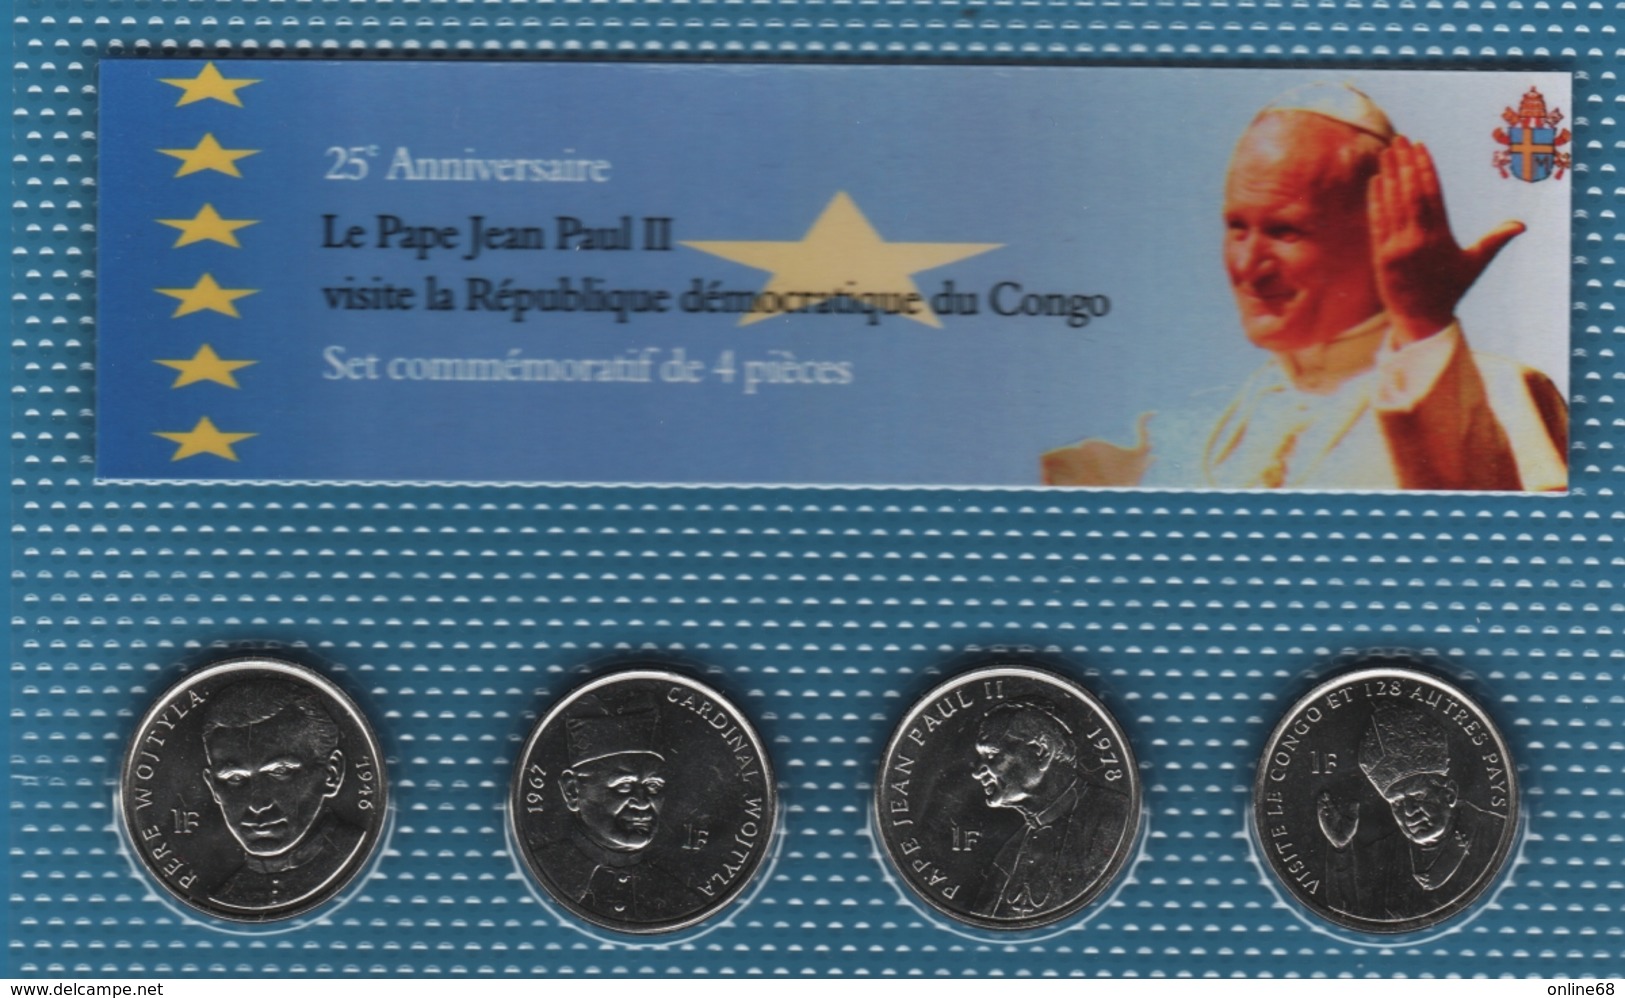 CONGO LOT 4x 1 FRANC 2004  (Jean Paul II)  Pope John Paul II's Visit   UNC - Congo (República Democrática 1998)